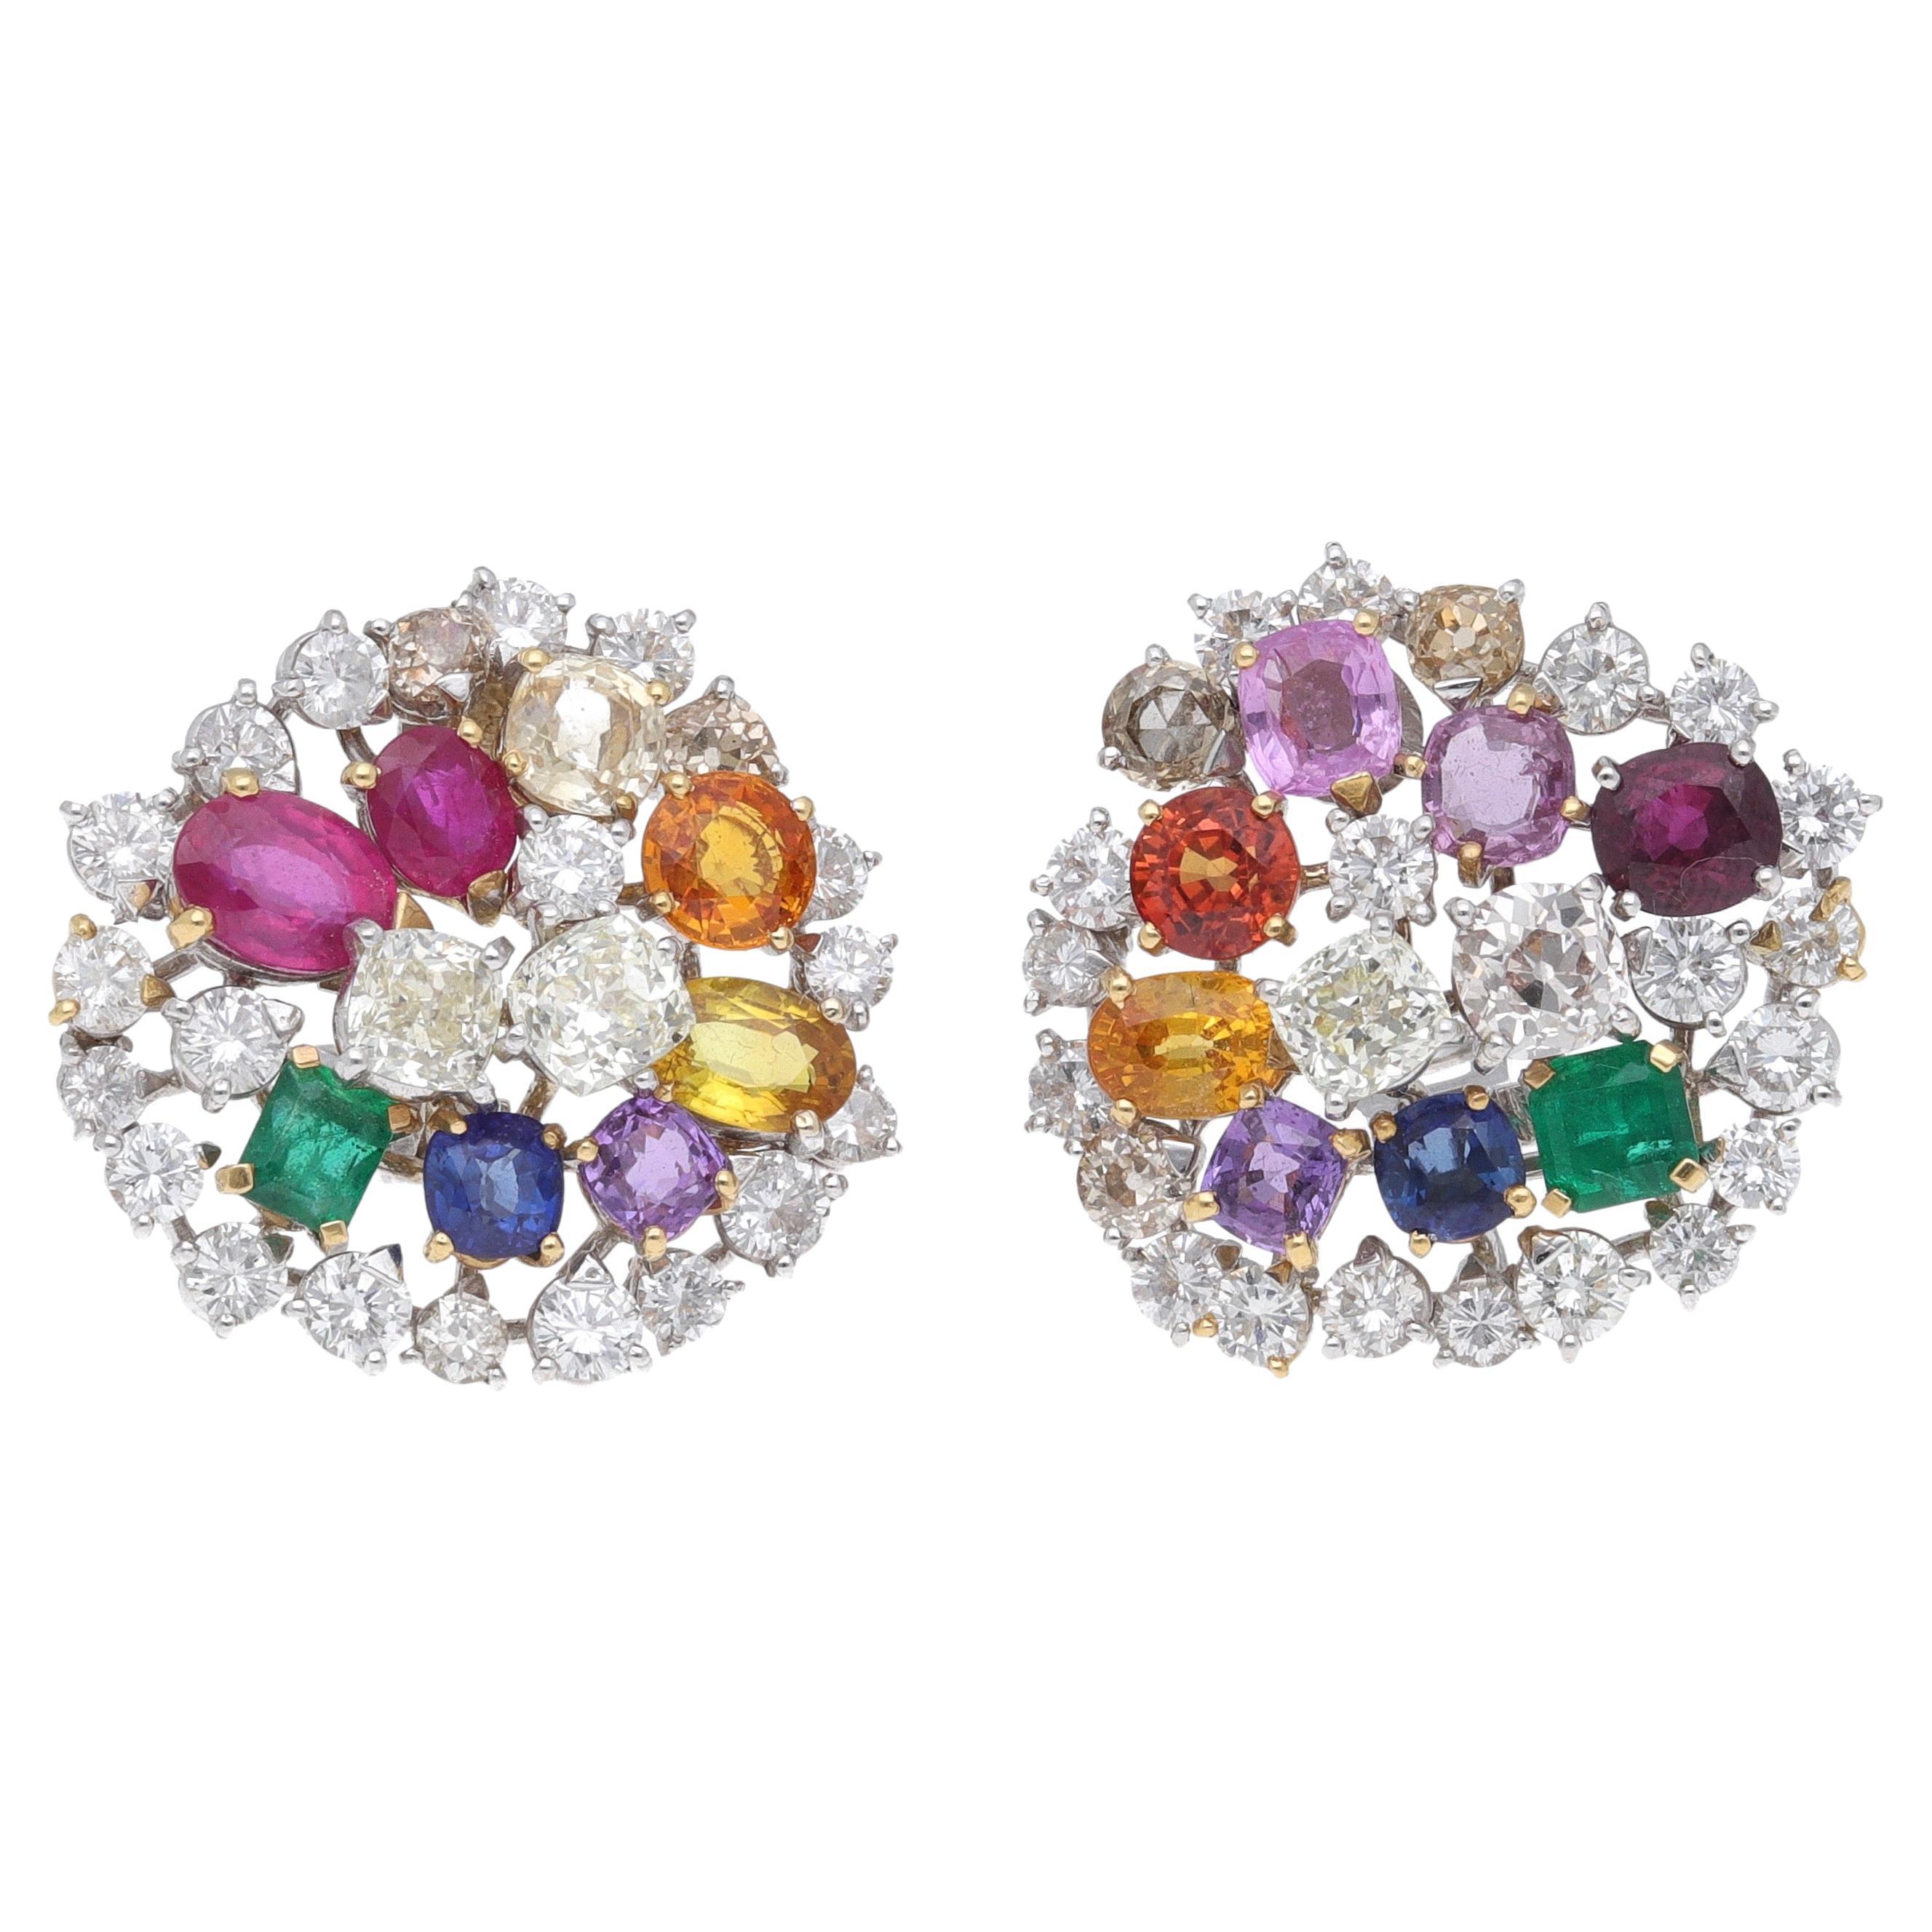 Fraleoni, boucles d'oreilles en or blanc 18 carats, diamants, rubis, émeraudes et saphirs